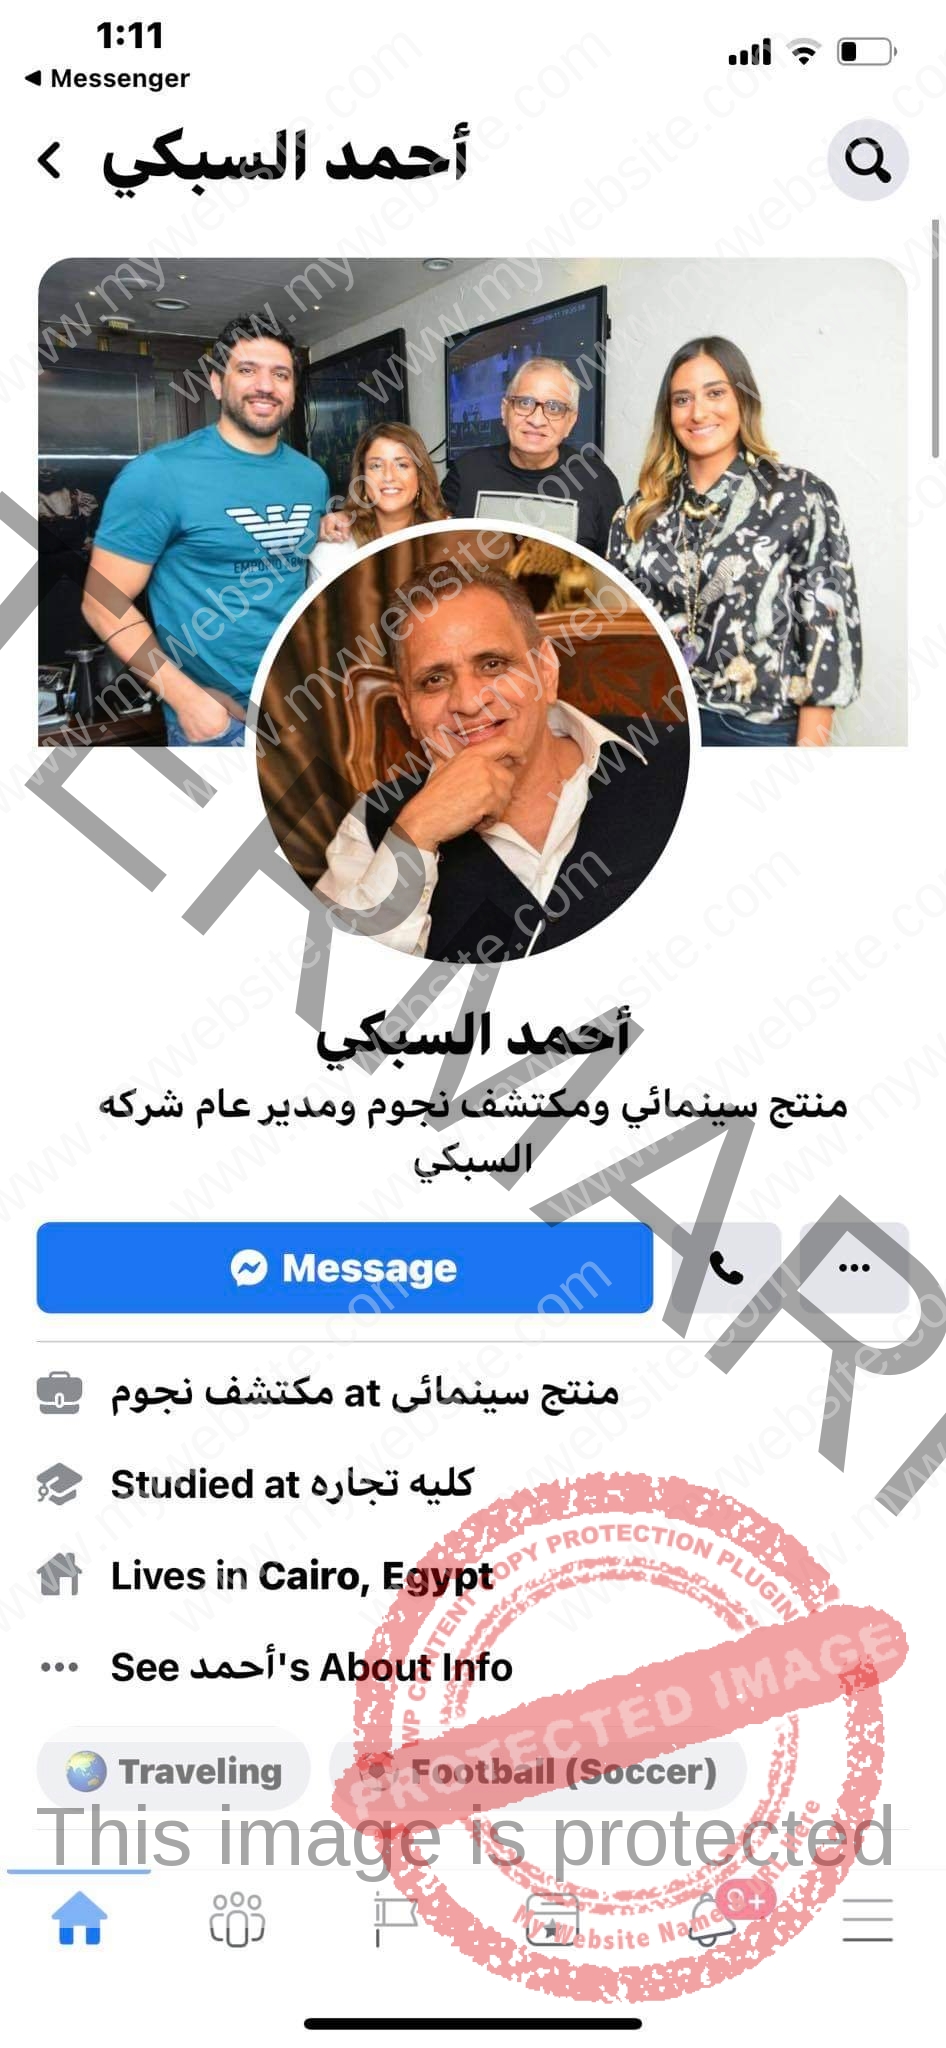 منتحل شخصية أحمد السبكي عبر الفيسبوك يطالب بكارت سوا السعودي